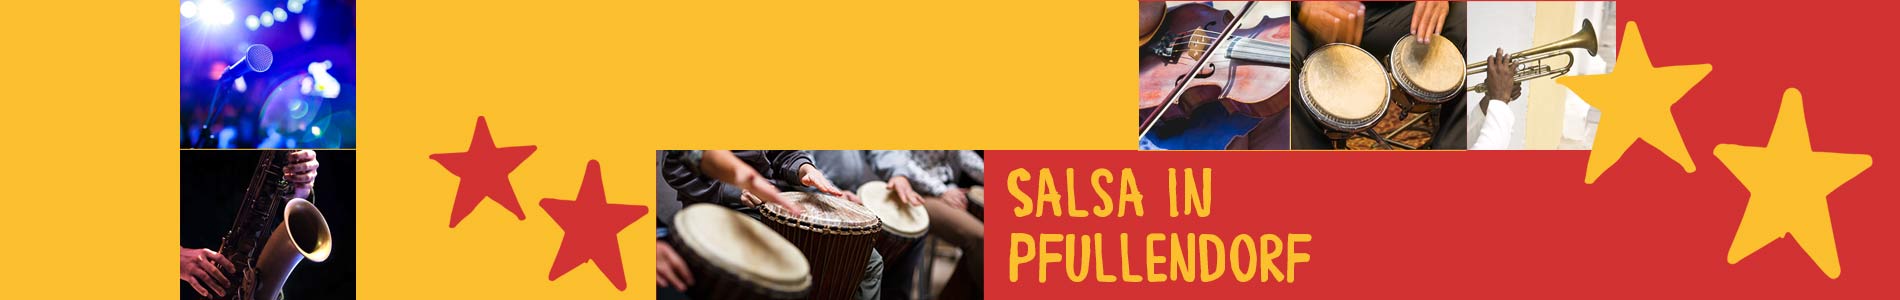 Salsa in Pfullendorf – Salsa lernen und tanzen, Tanzkurse, Partys, Veranstaltungen